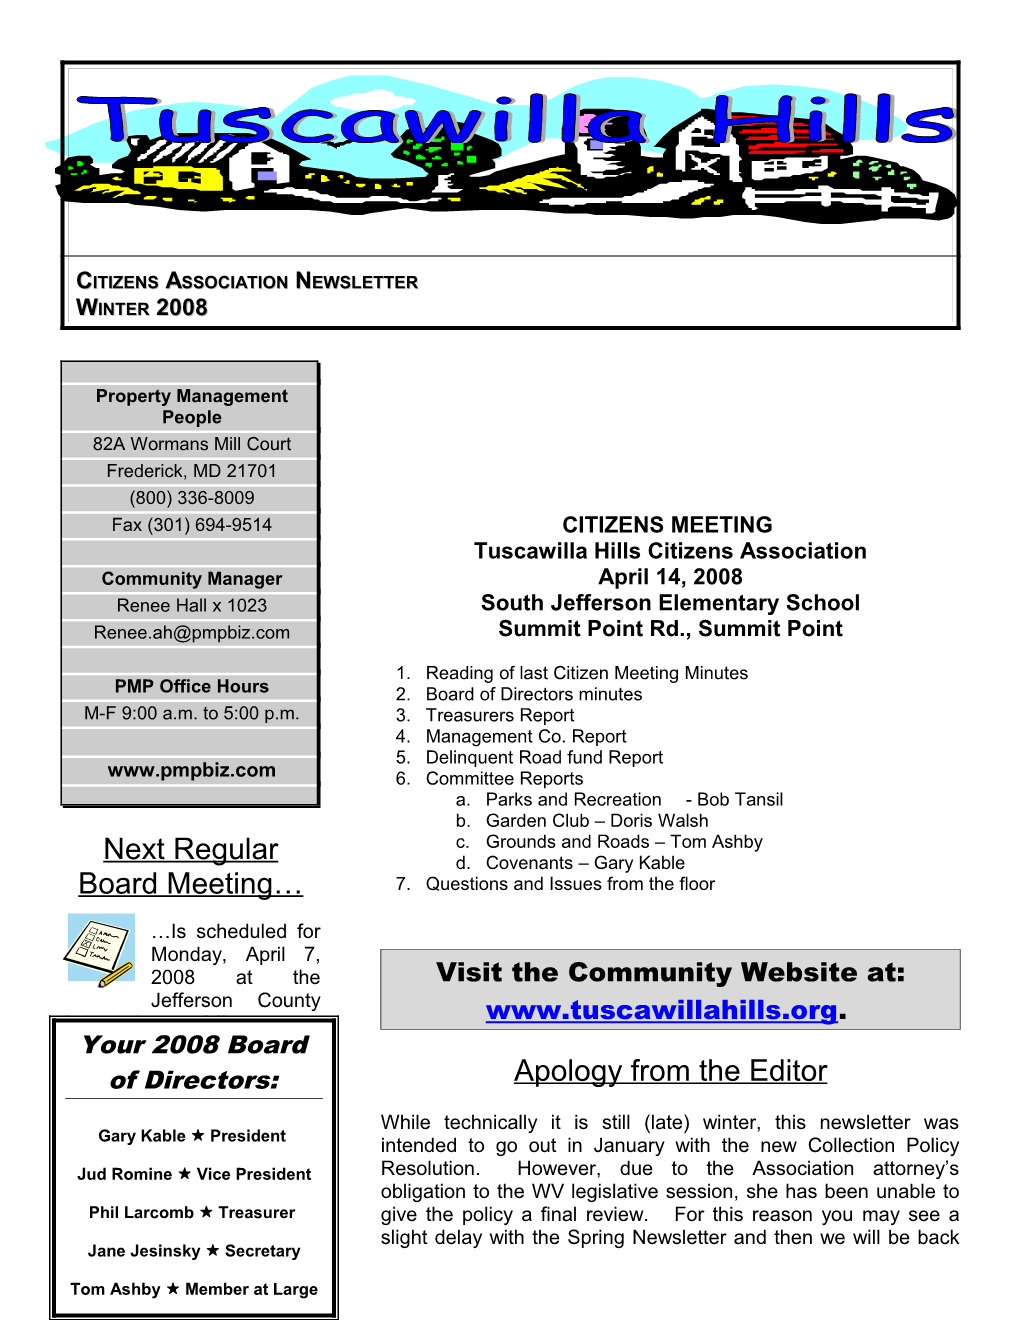 Citizens Association Newsletter Winter 2008